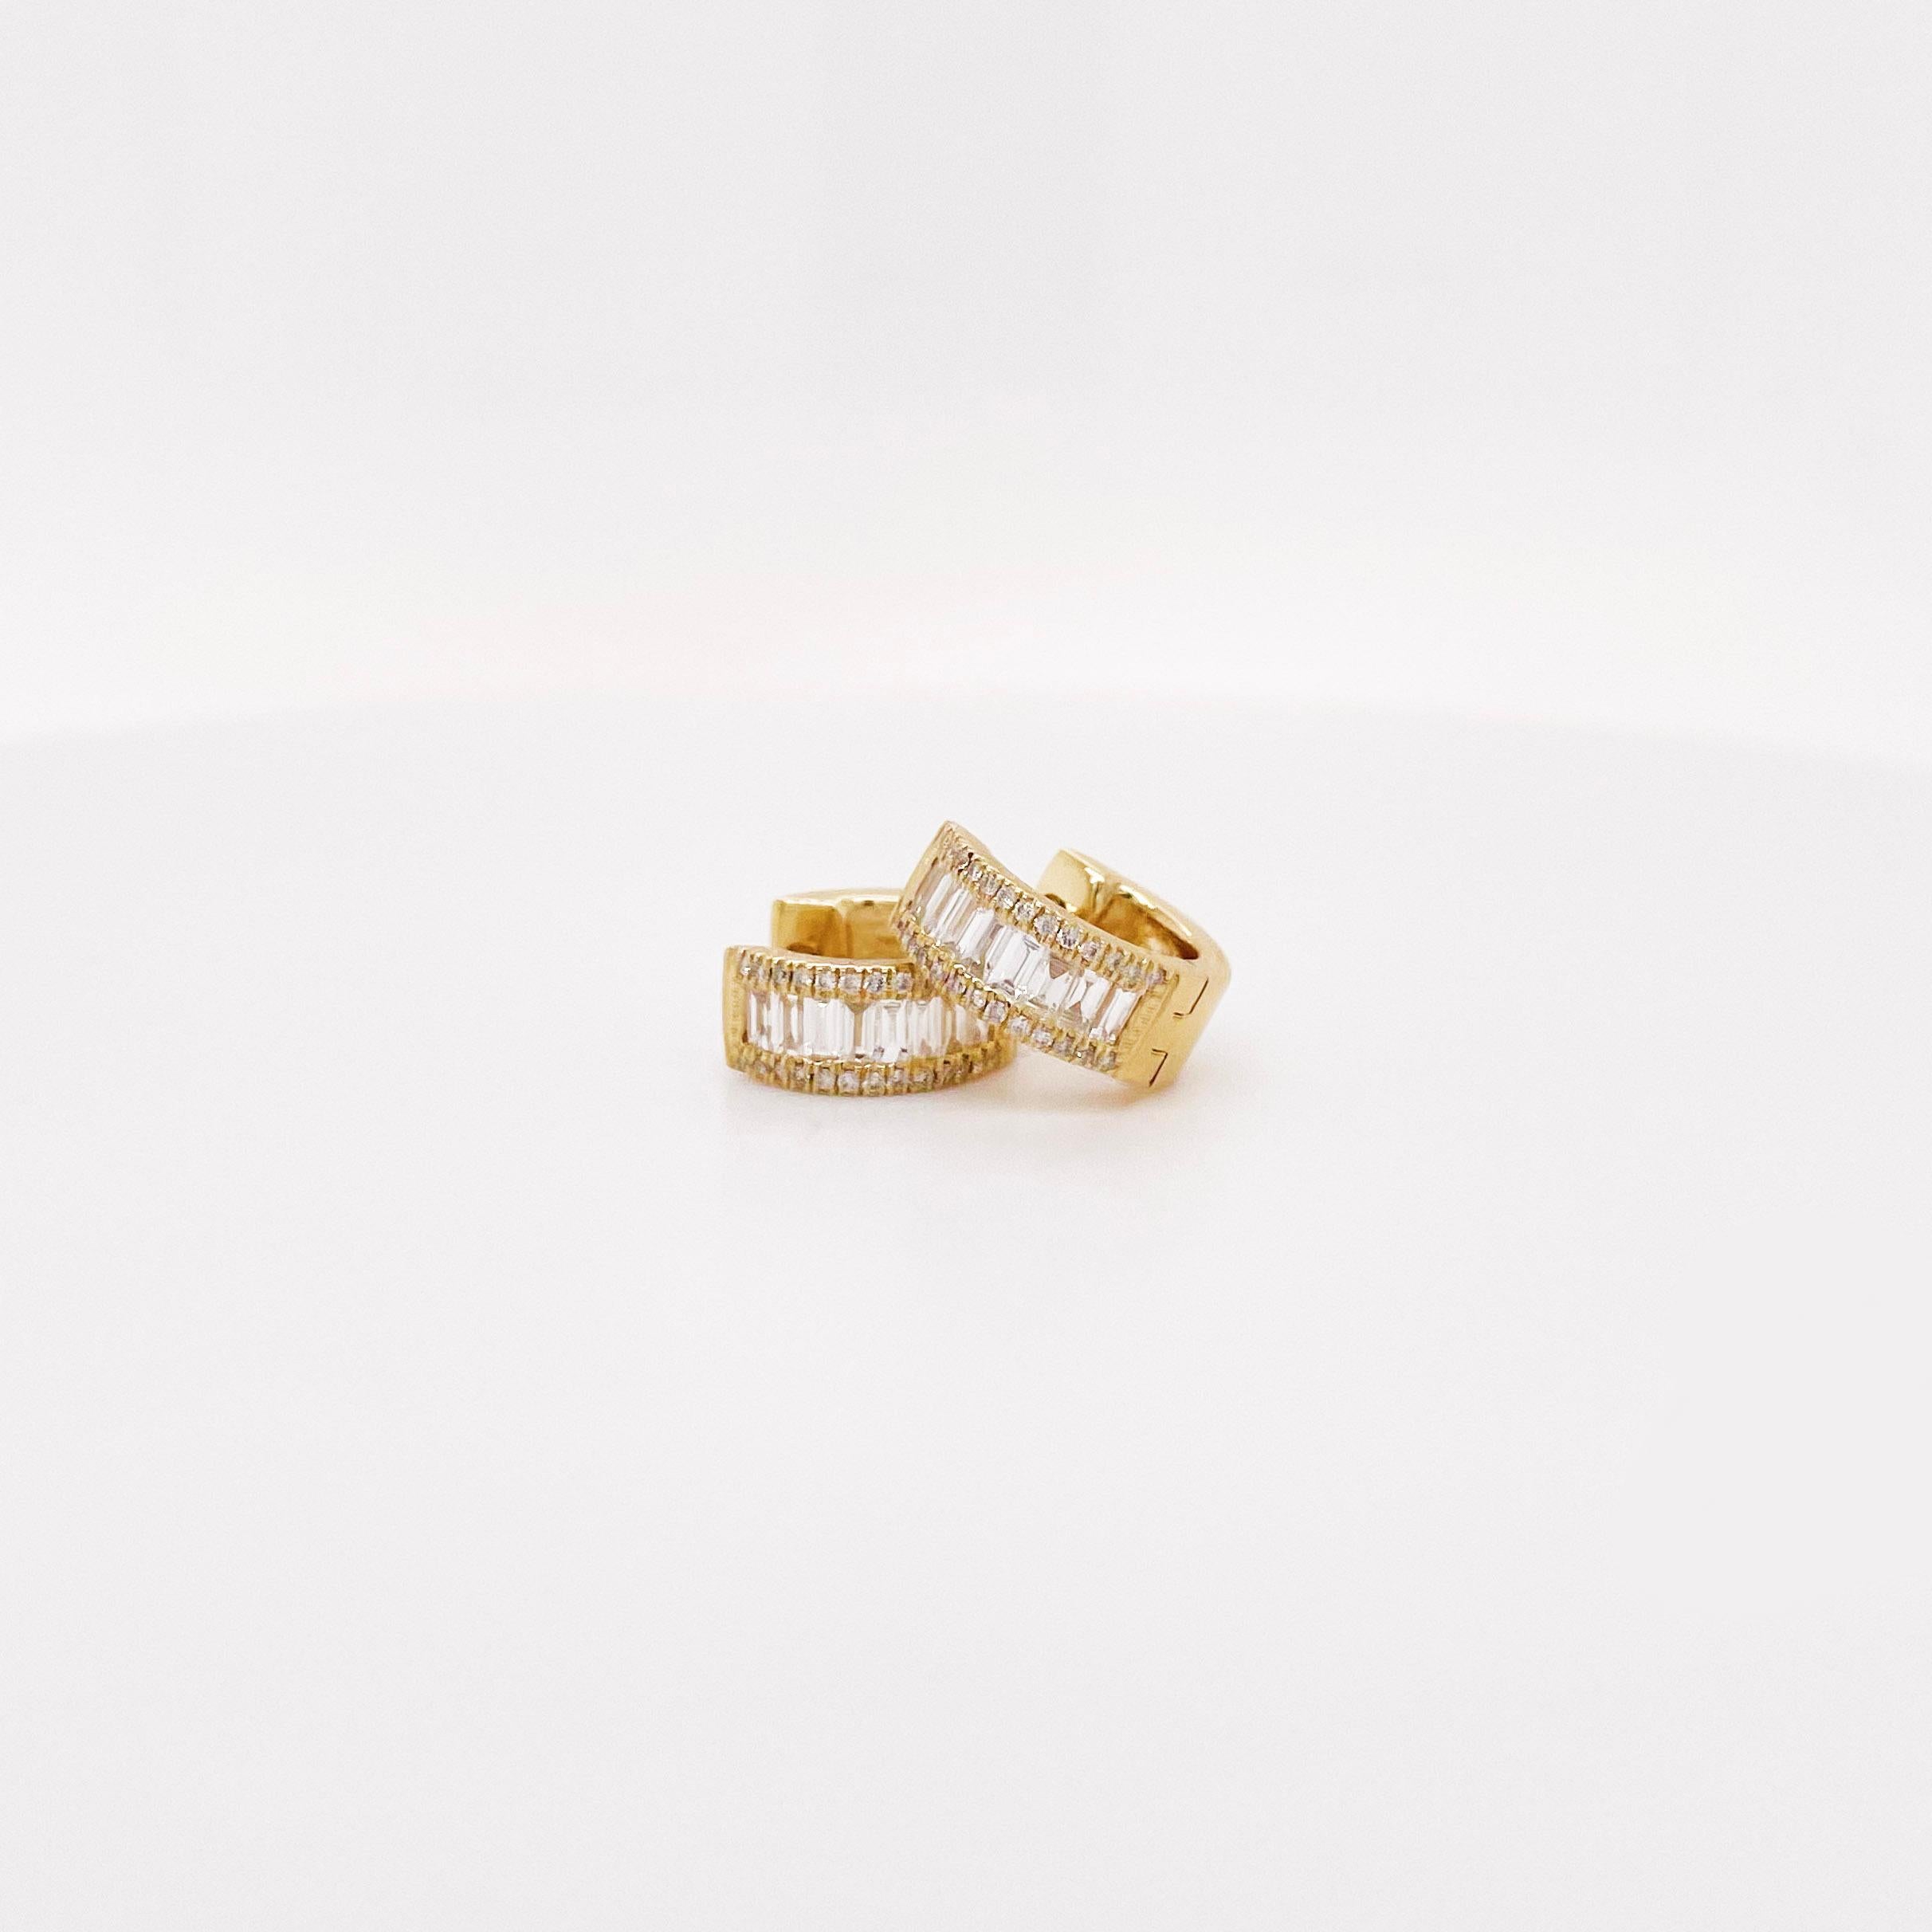 Mit mehr als einem halben Karat Gesamtgewicht an Diamanten sind diese Diamanten das heißeste Design! Diamond Huggies sind seit 2021 beliebt und ihr Design wurde gerade verbessert! Die Huggie-Ohrringe haben nahtlos gefasste Baguette-Diamanten. Die